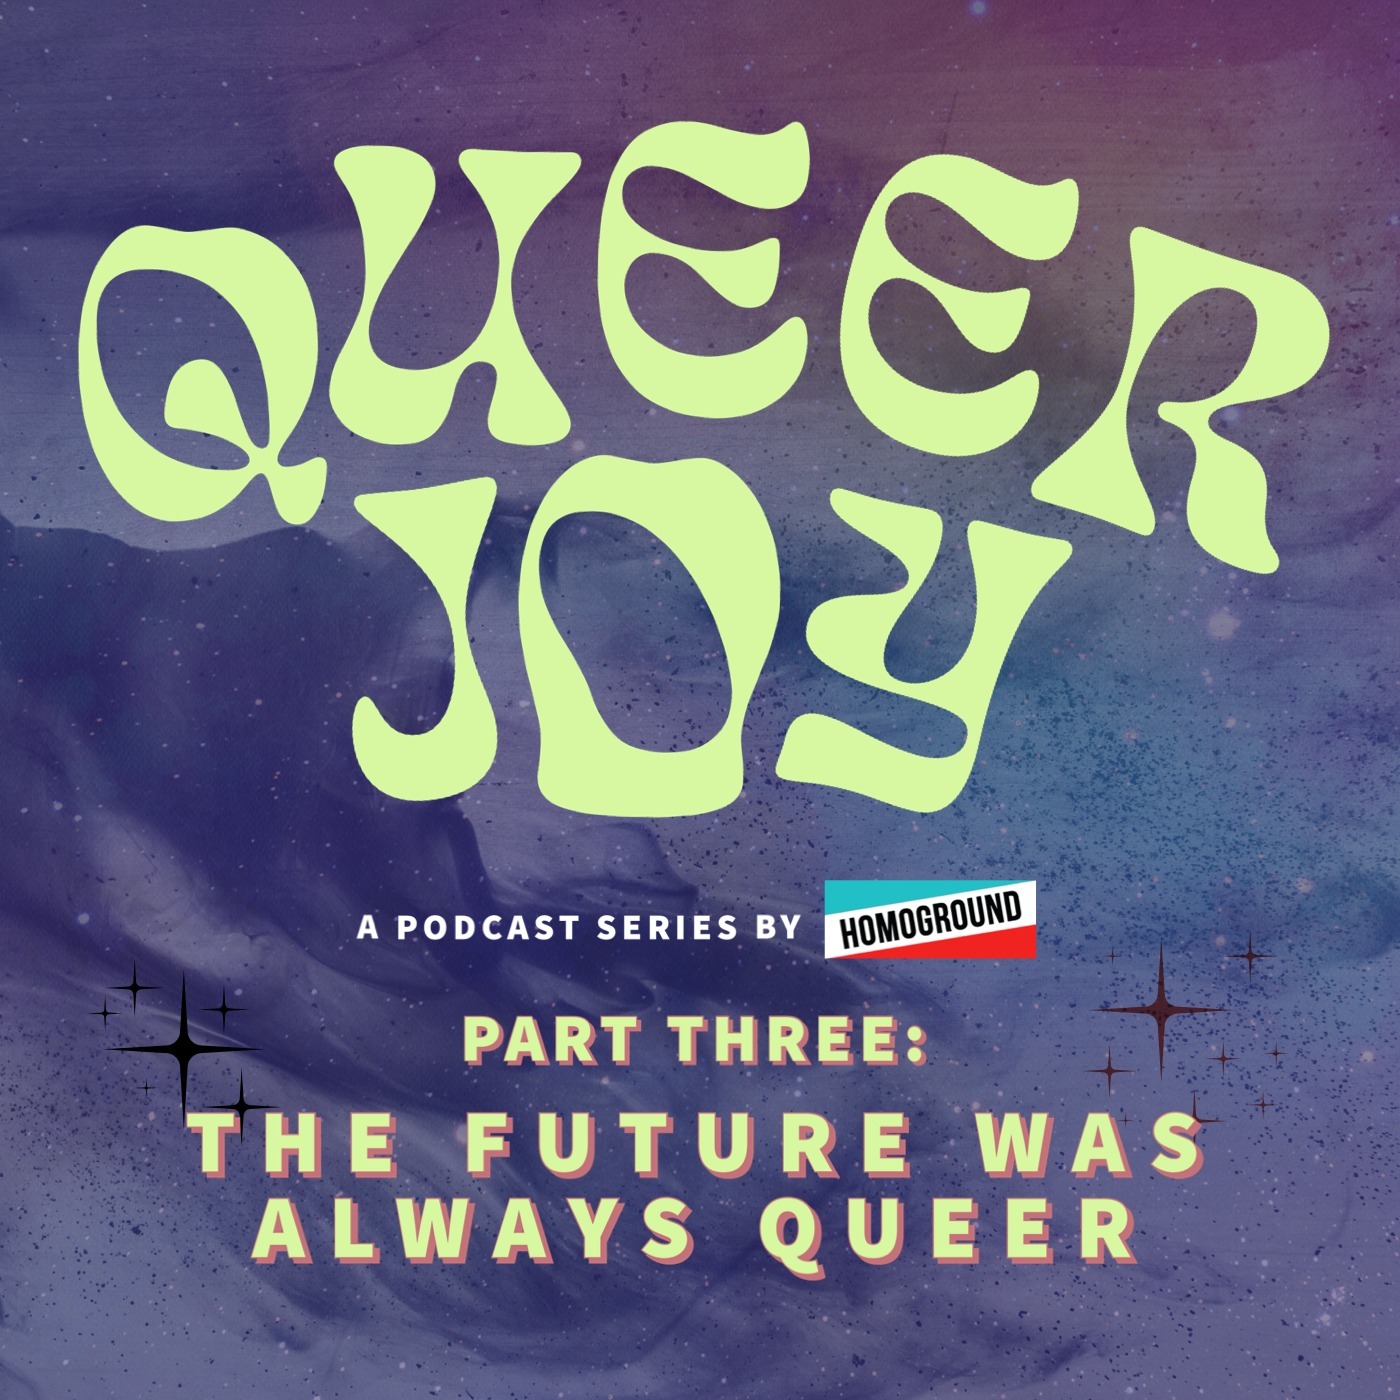 Queer Joy Part 3: 